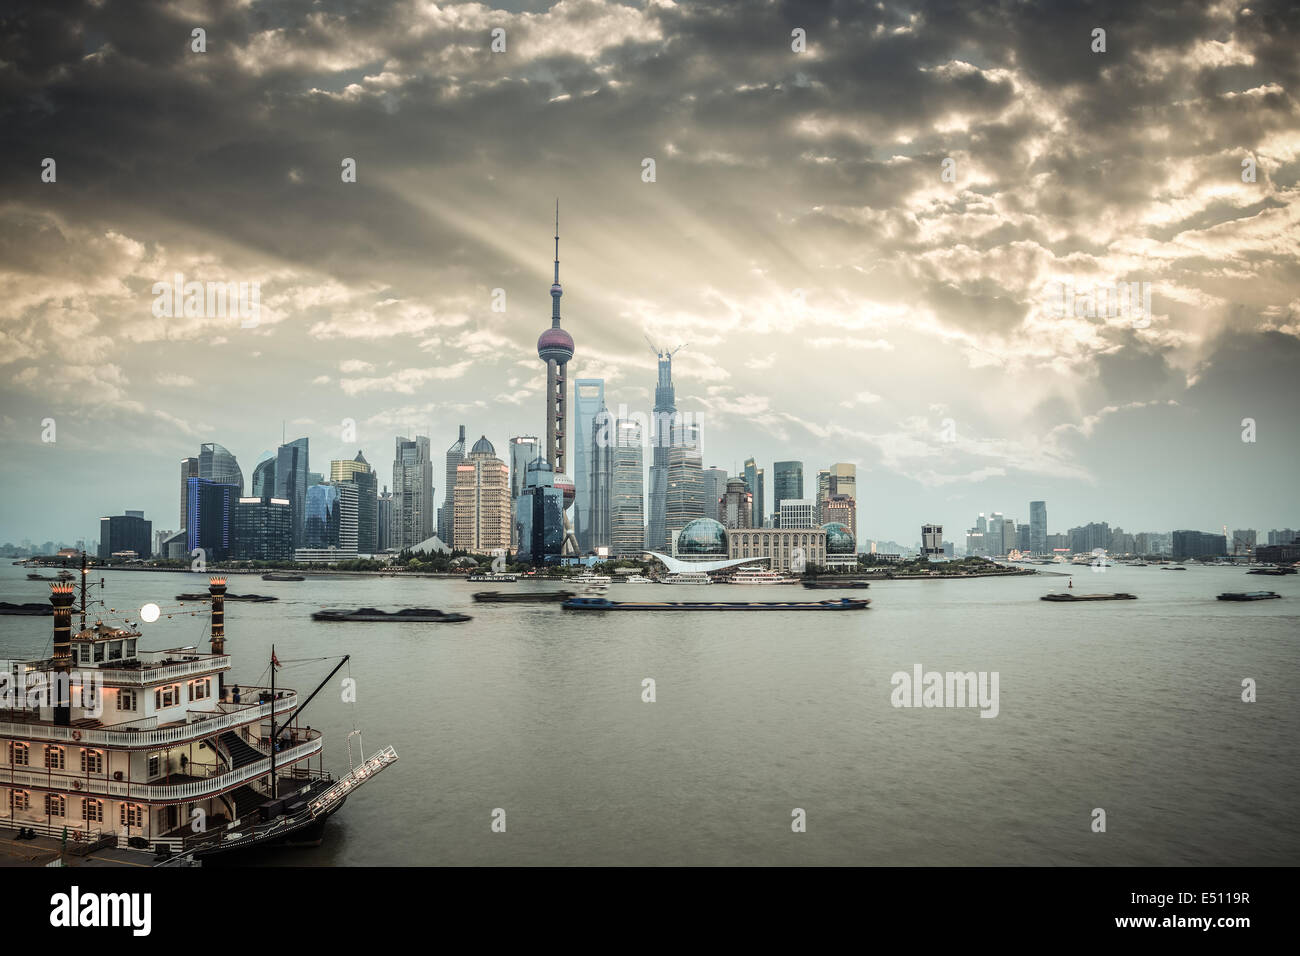 shanghai skyline with dramatic sky Stock Photo